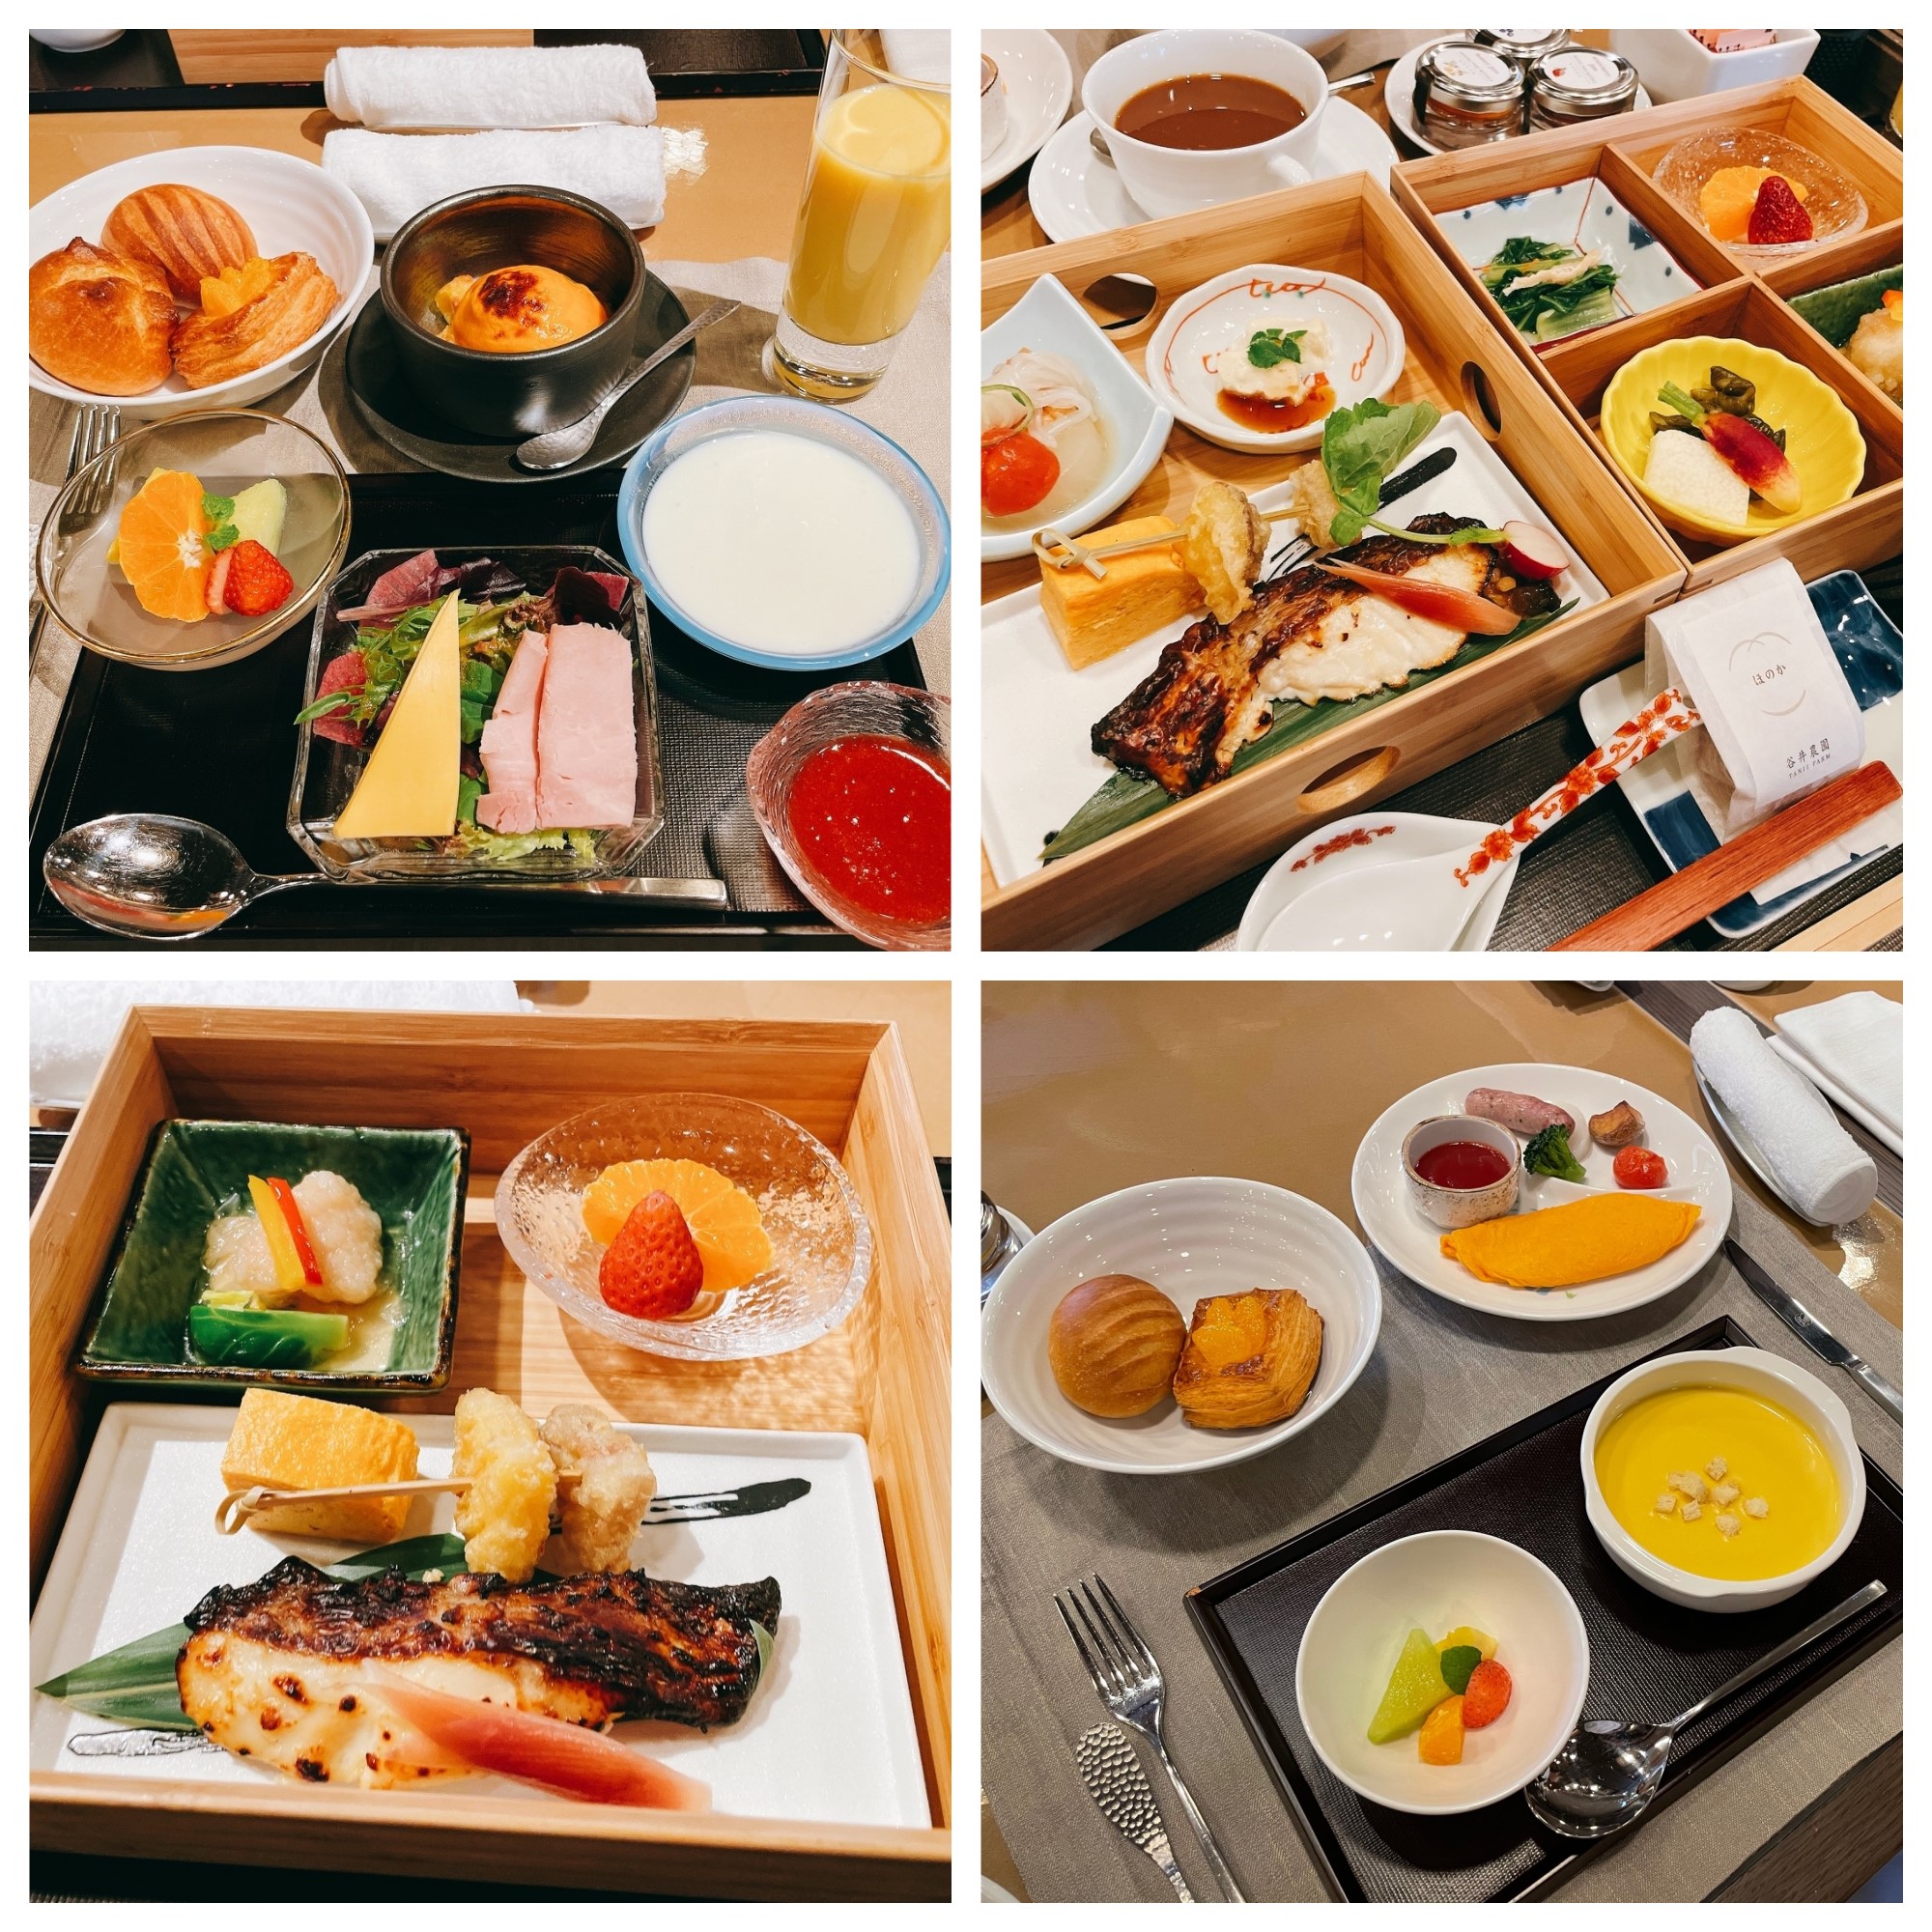 Hotel The Mitsui Kyoto朝食の内容は 和朝食 アメリカンブレックファースト 子供用朝食 陸マイラー医師の隠密sfc修行